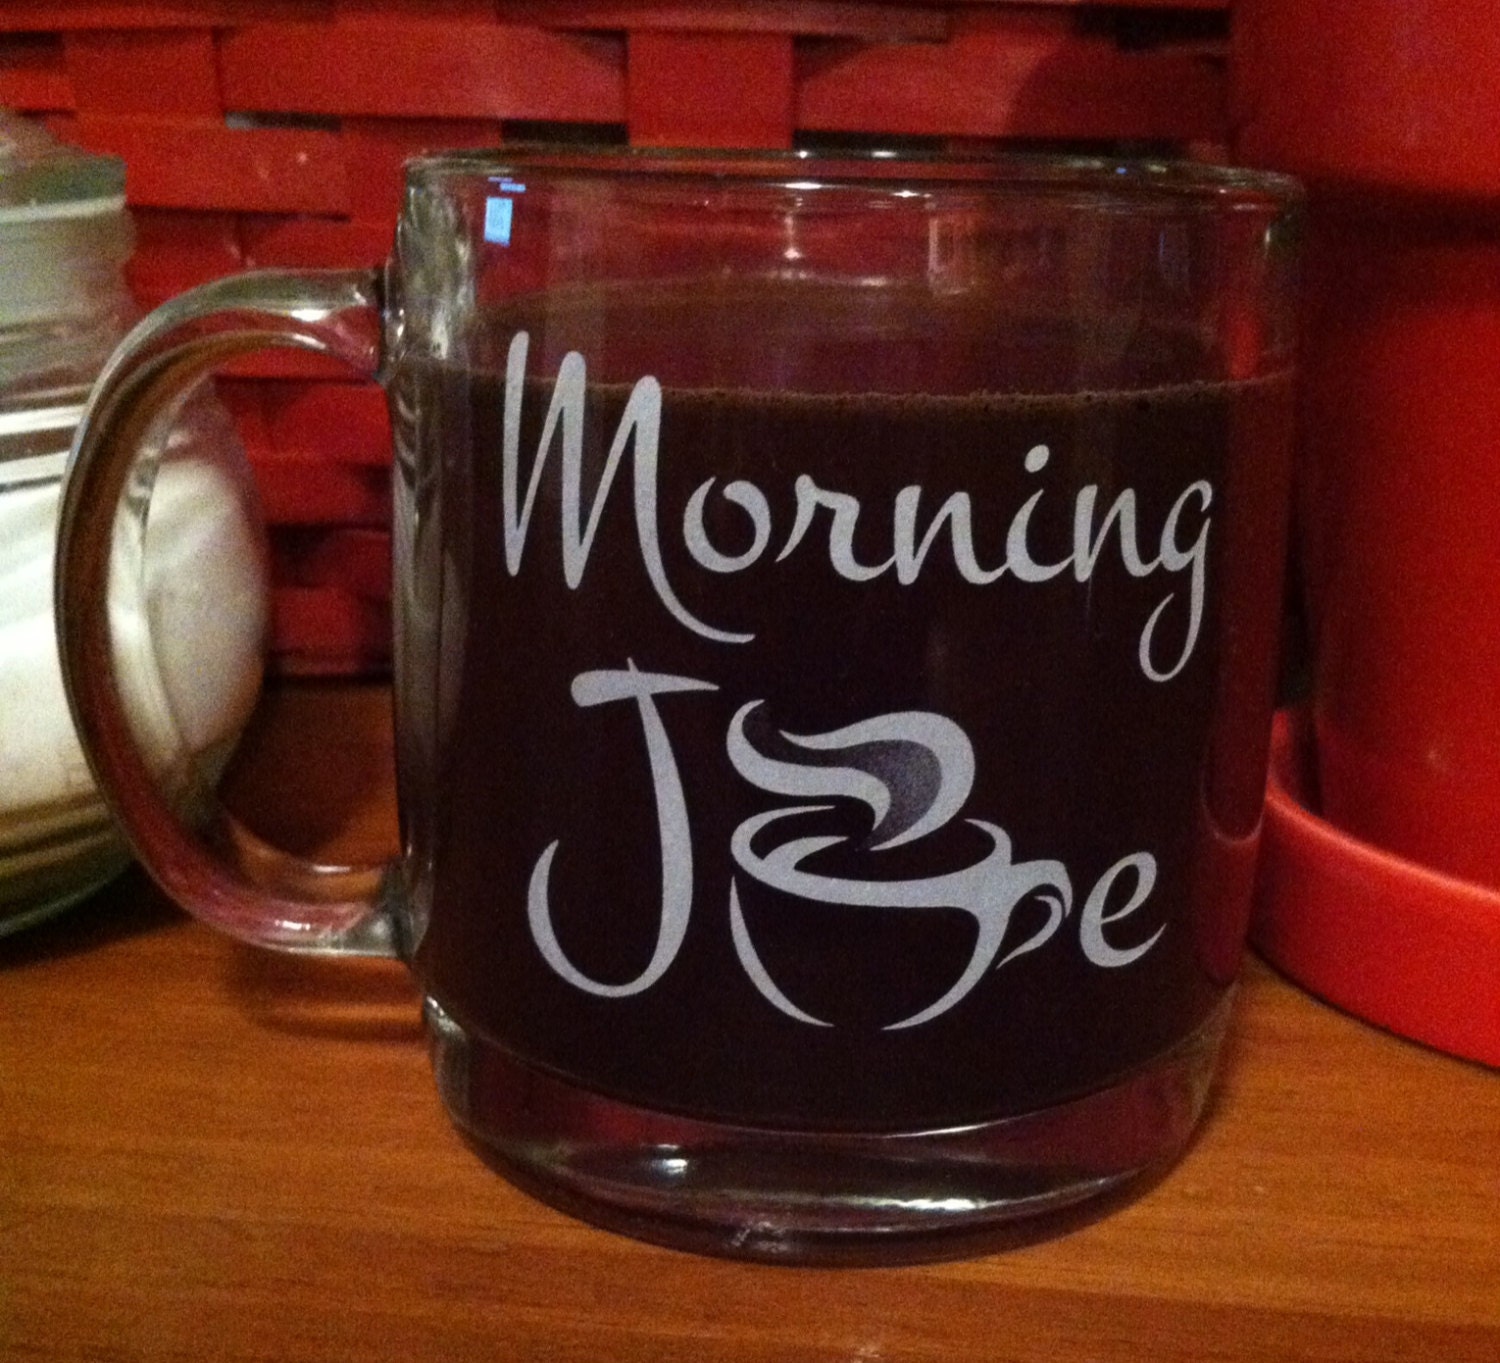 cuppa joe coffee